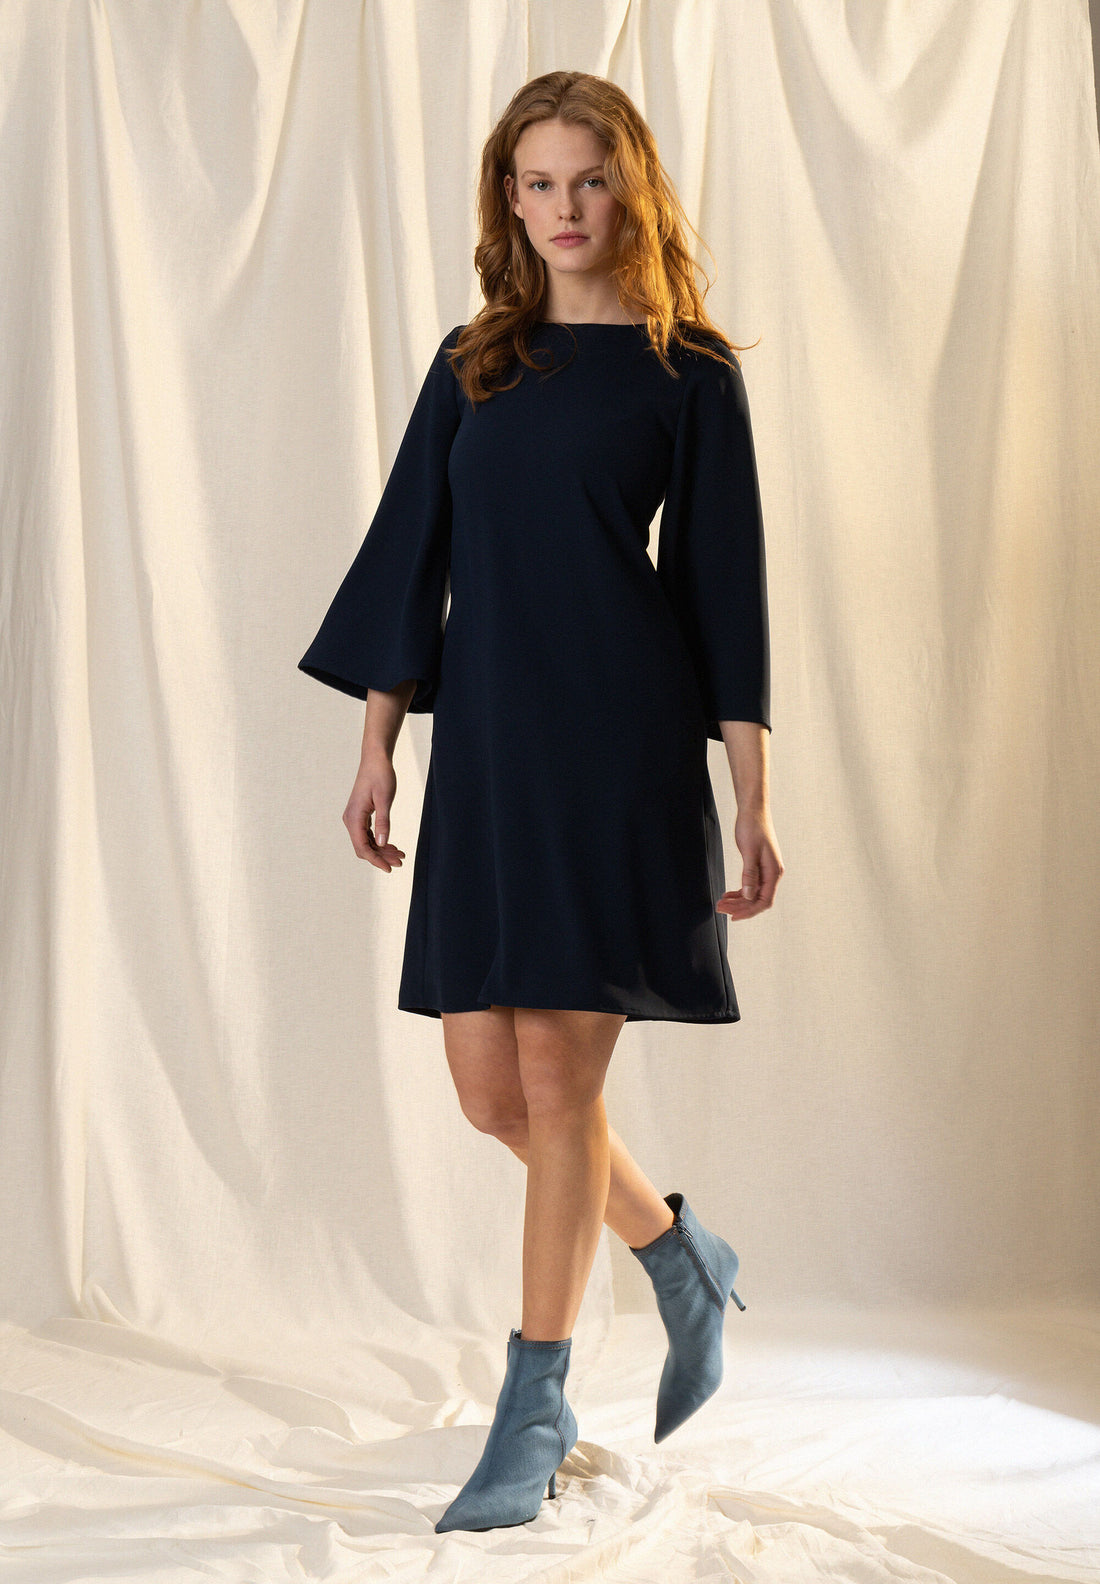 Blue Short Dress